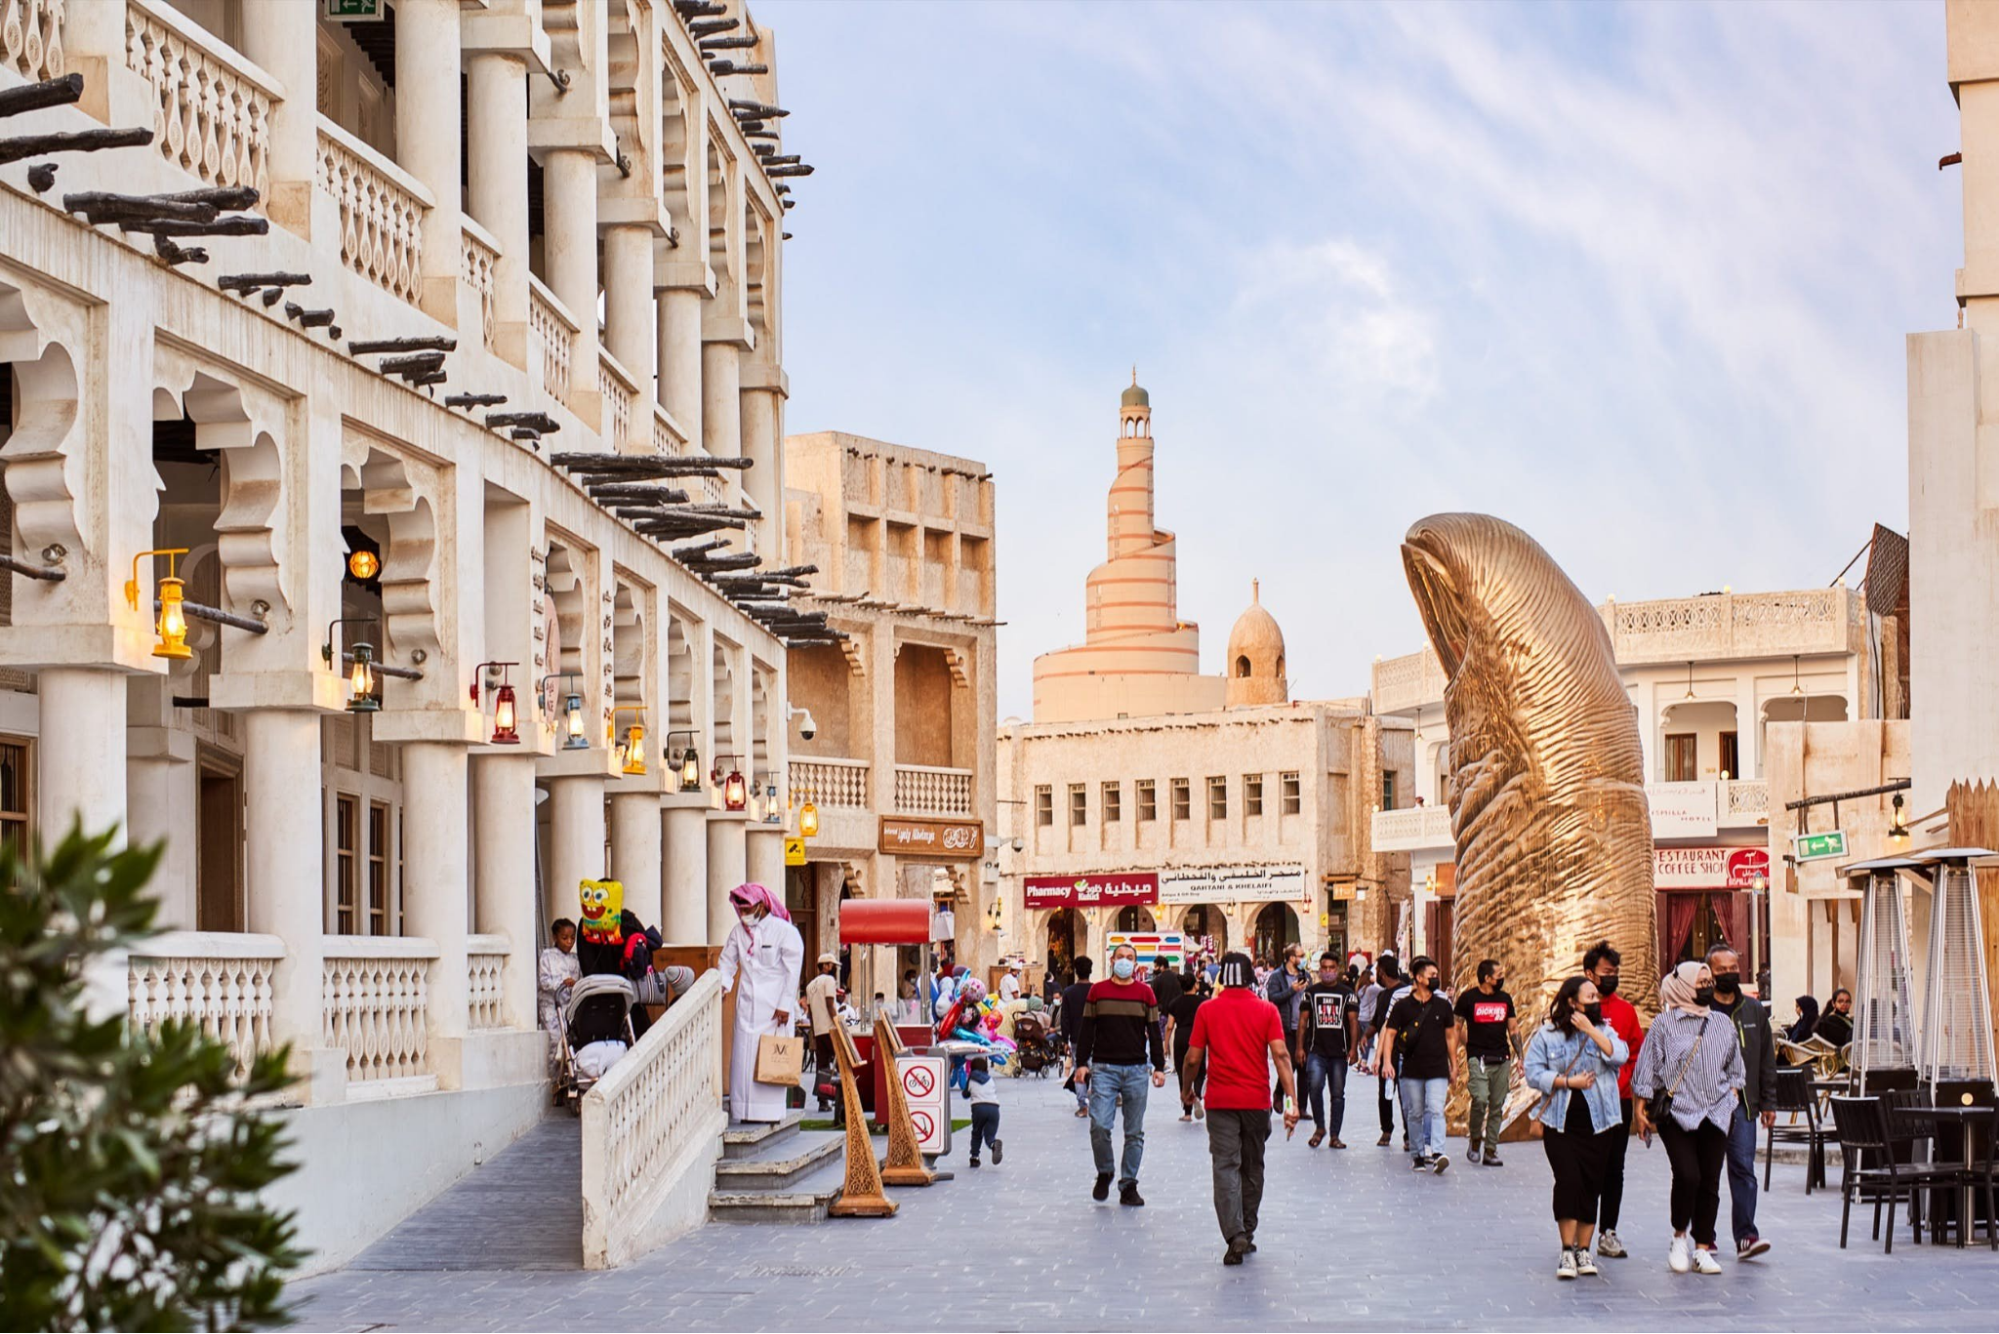 Tour du lịch Qatar có vé đến hàng trăm triệu đồng 